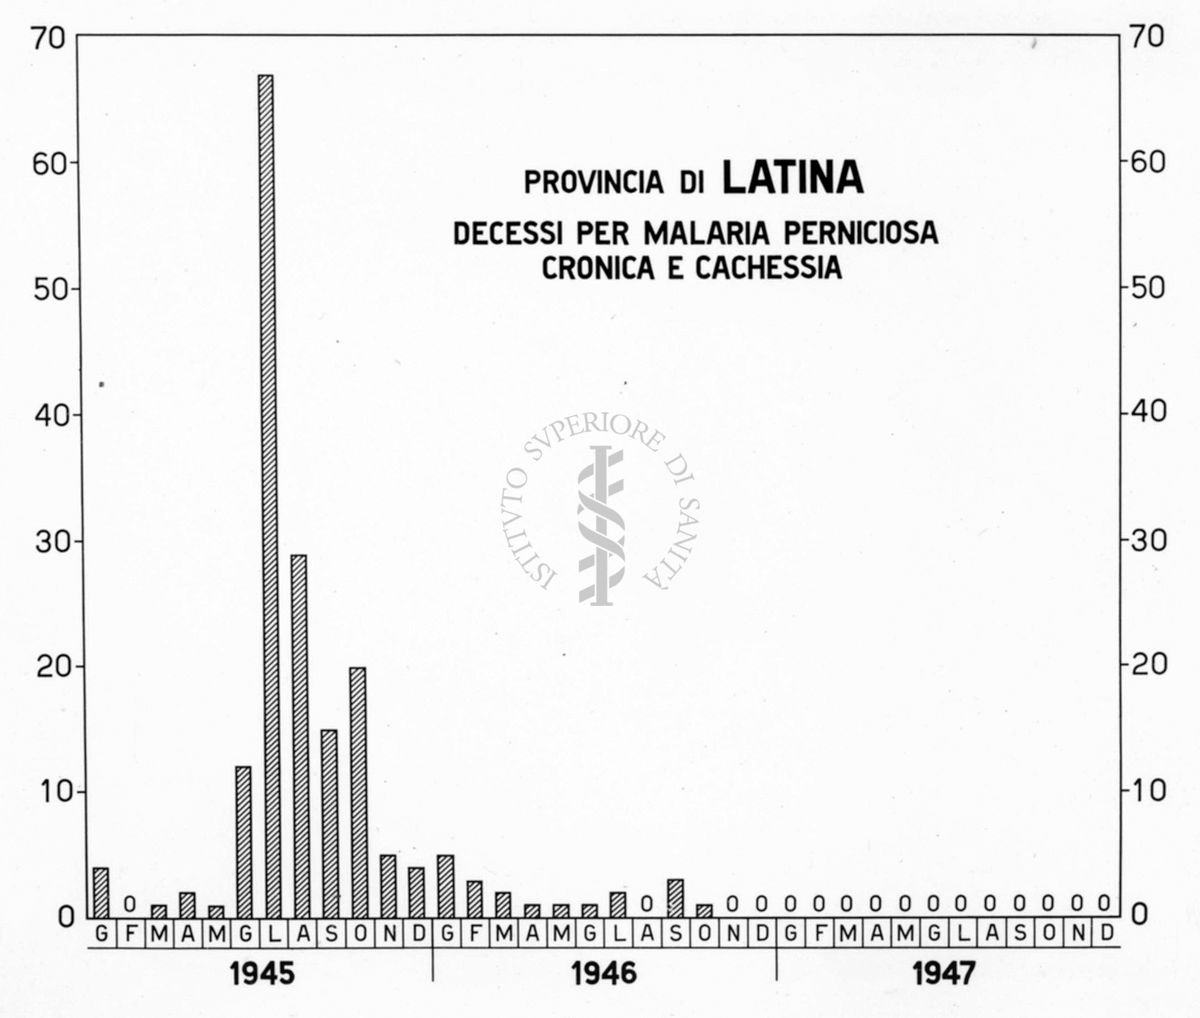 Istogramma riguardante i decessi per Malaria Perniciosa Cronica e Cachessia nella Provincia di Latina. Dati mensili nel triennio 1945-1947